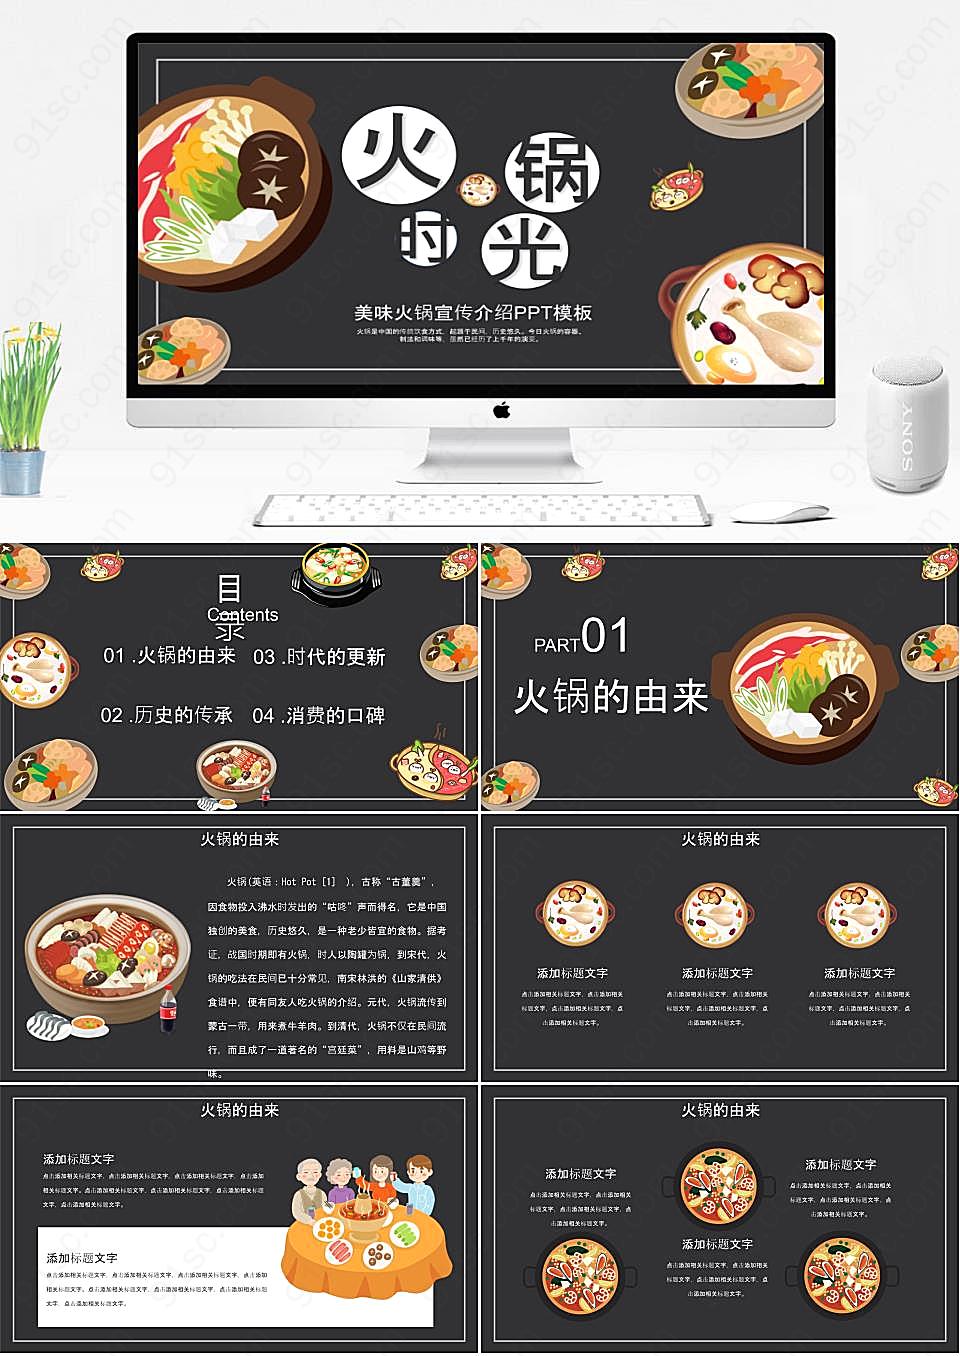 中国火锅节品尝火锅的美味感受中国的饮食文化餐饮美食PPT模板下载